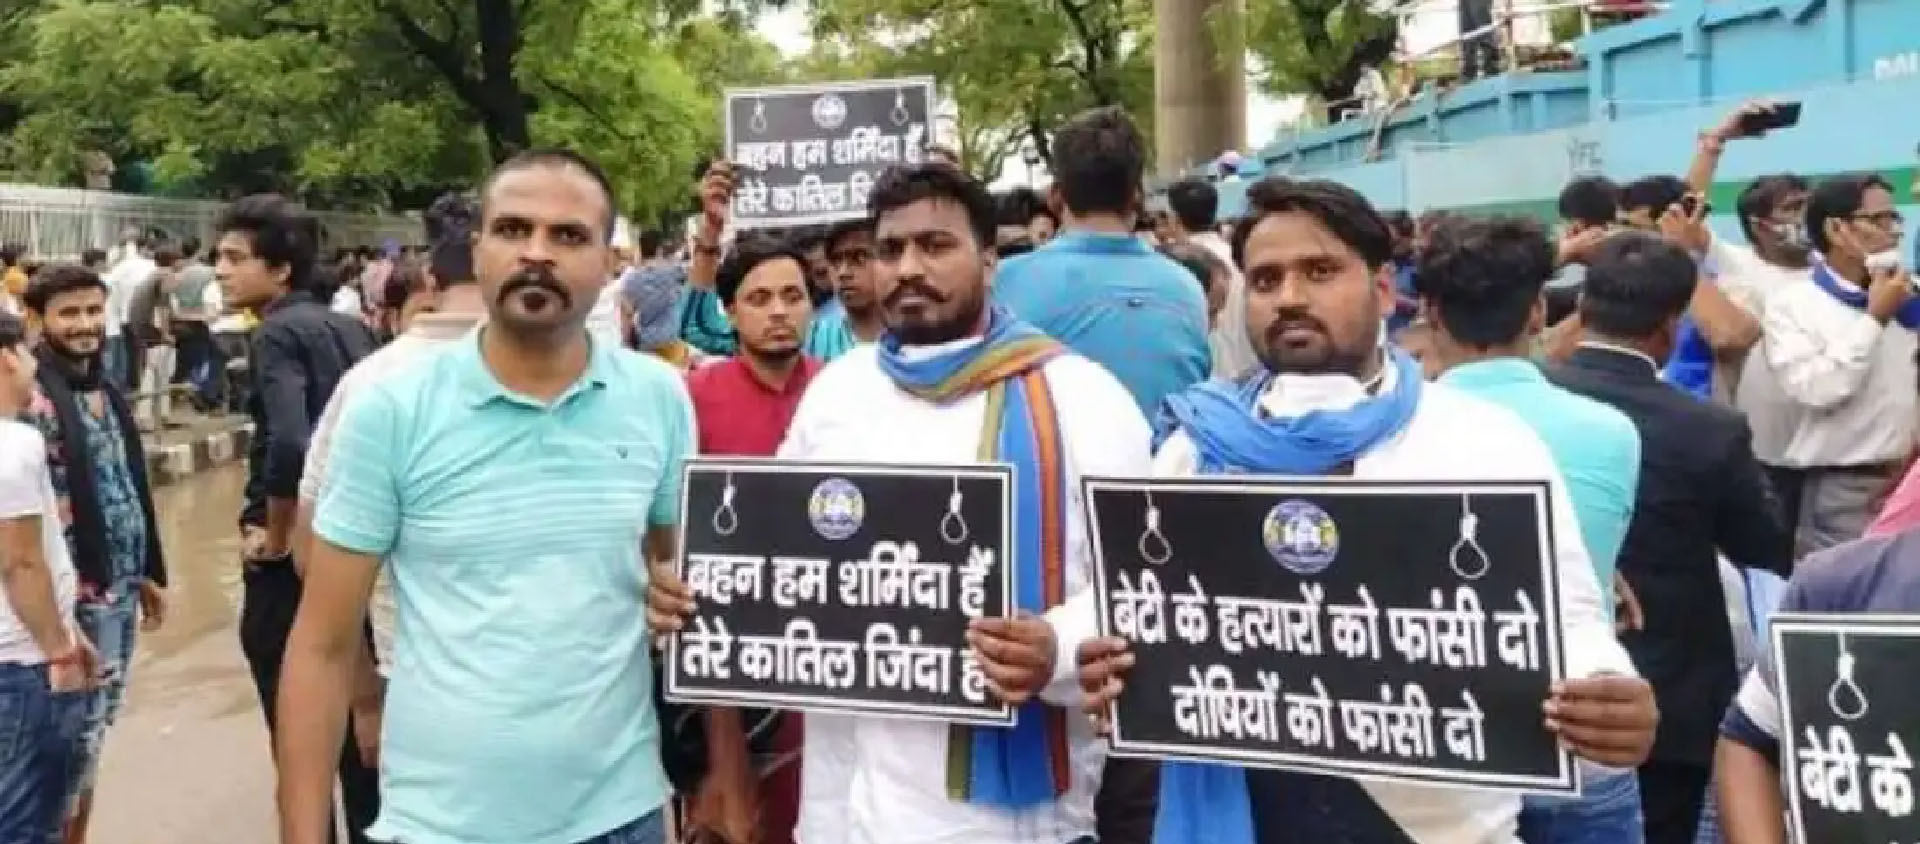 Des Dalits manifestent à New Delhi pour le respect de leurs droits | DR